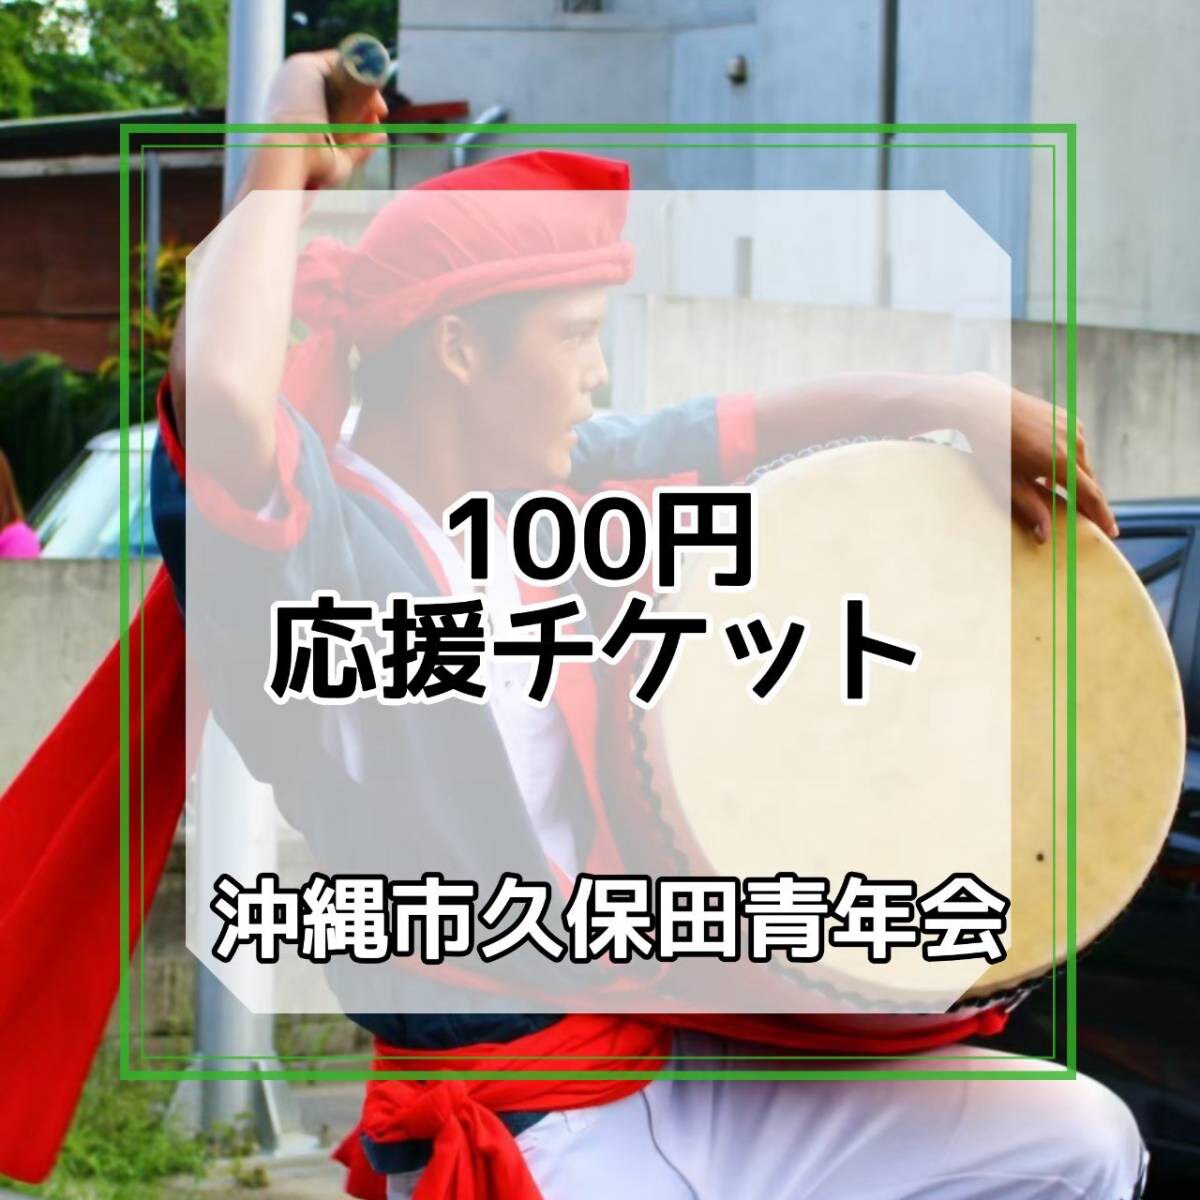 100円応援チケット